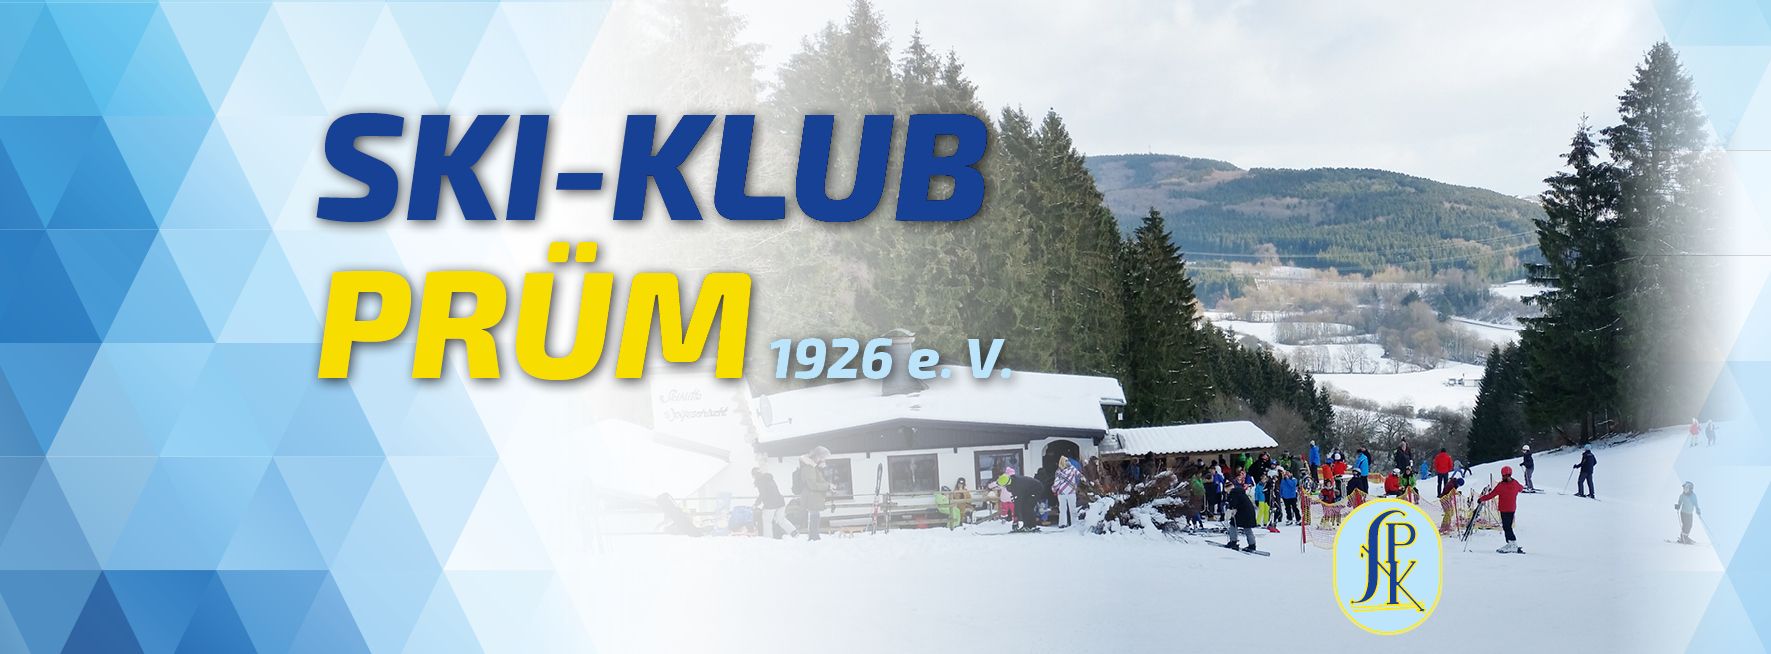 Skihütte Wolfsschlucht | Ski-Klub Prüm 1926 e. V.